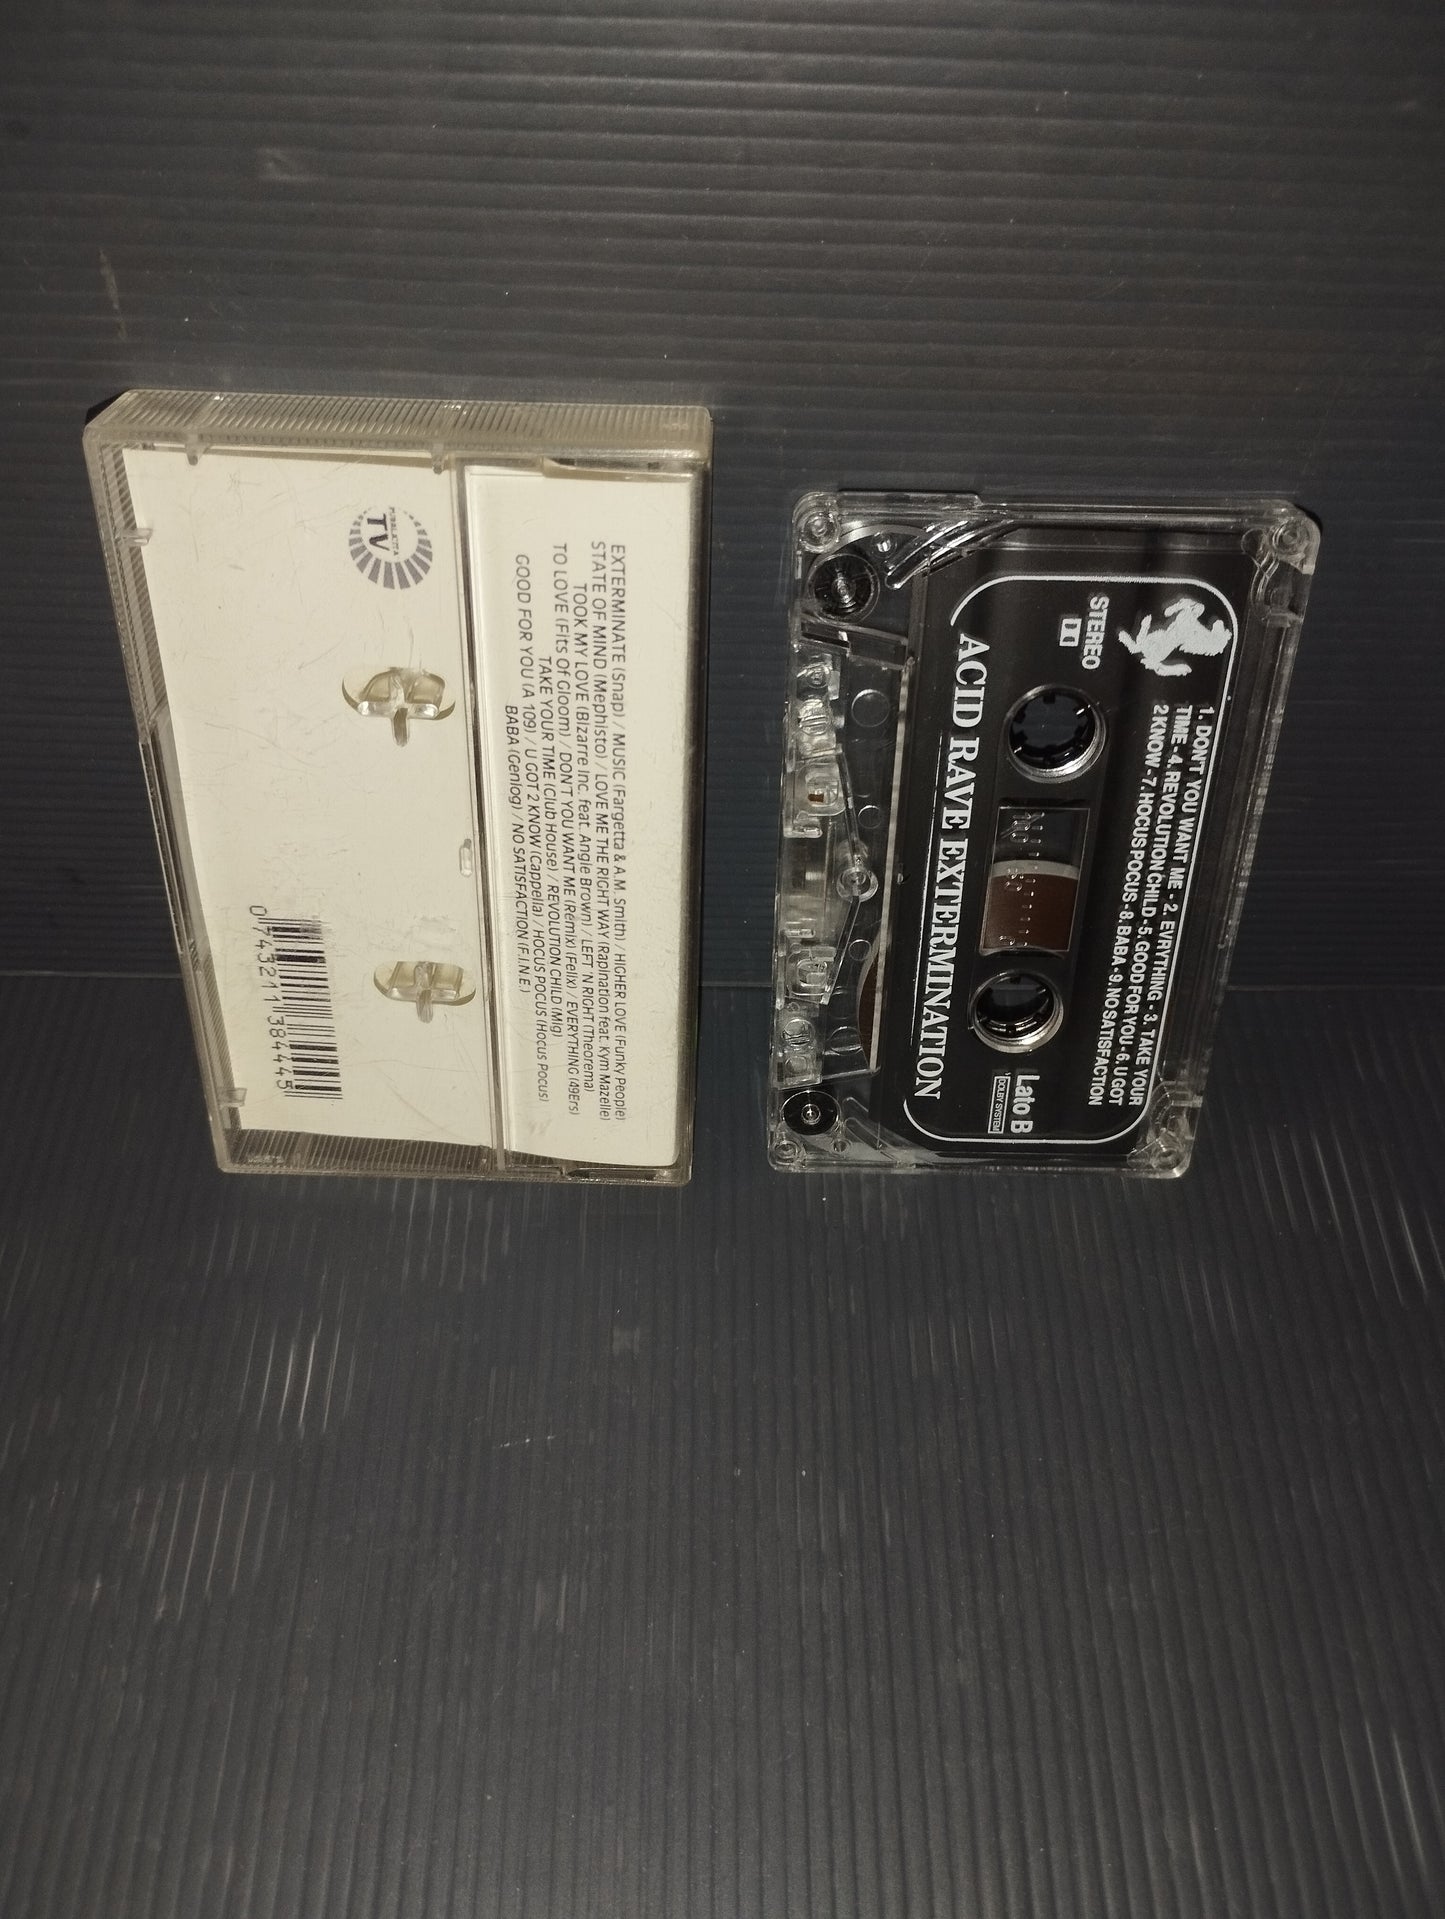 Acid Rave Extermination cassette